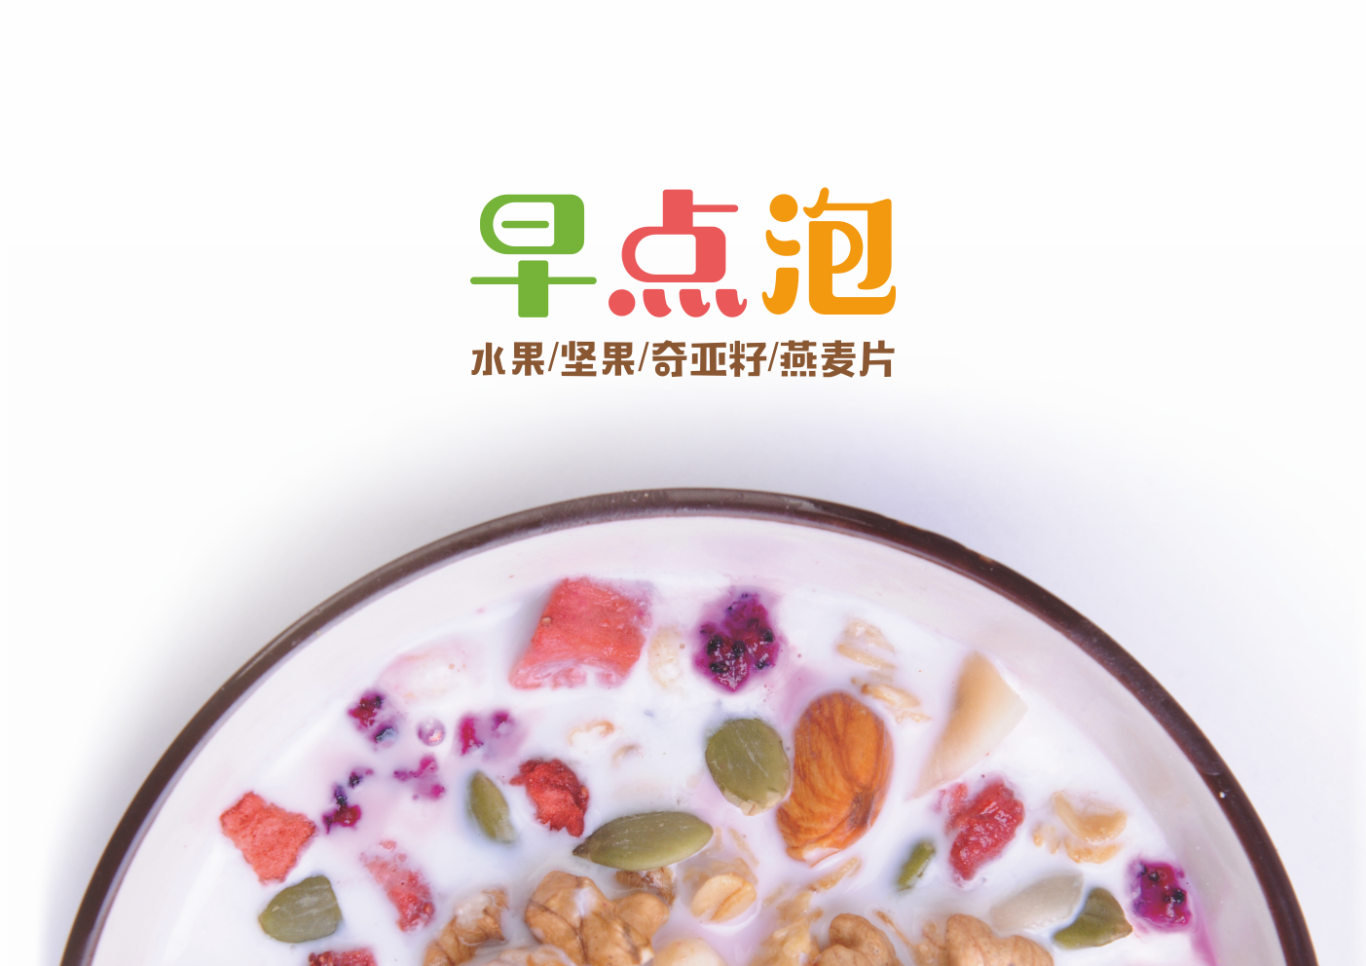 五谷食尚-早点泡品牌logo&燕麦牛奶包装设计图6